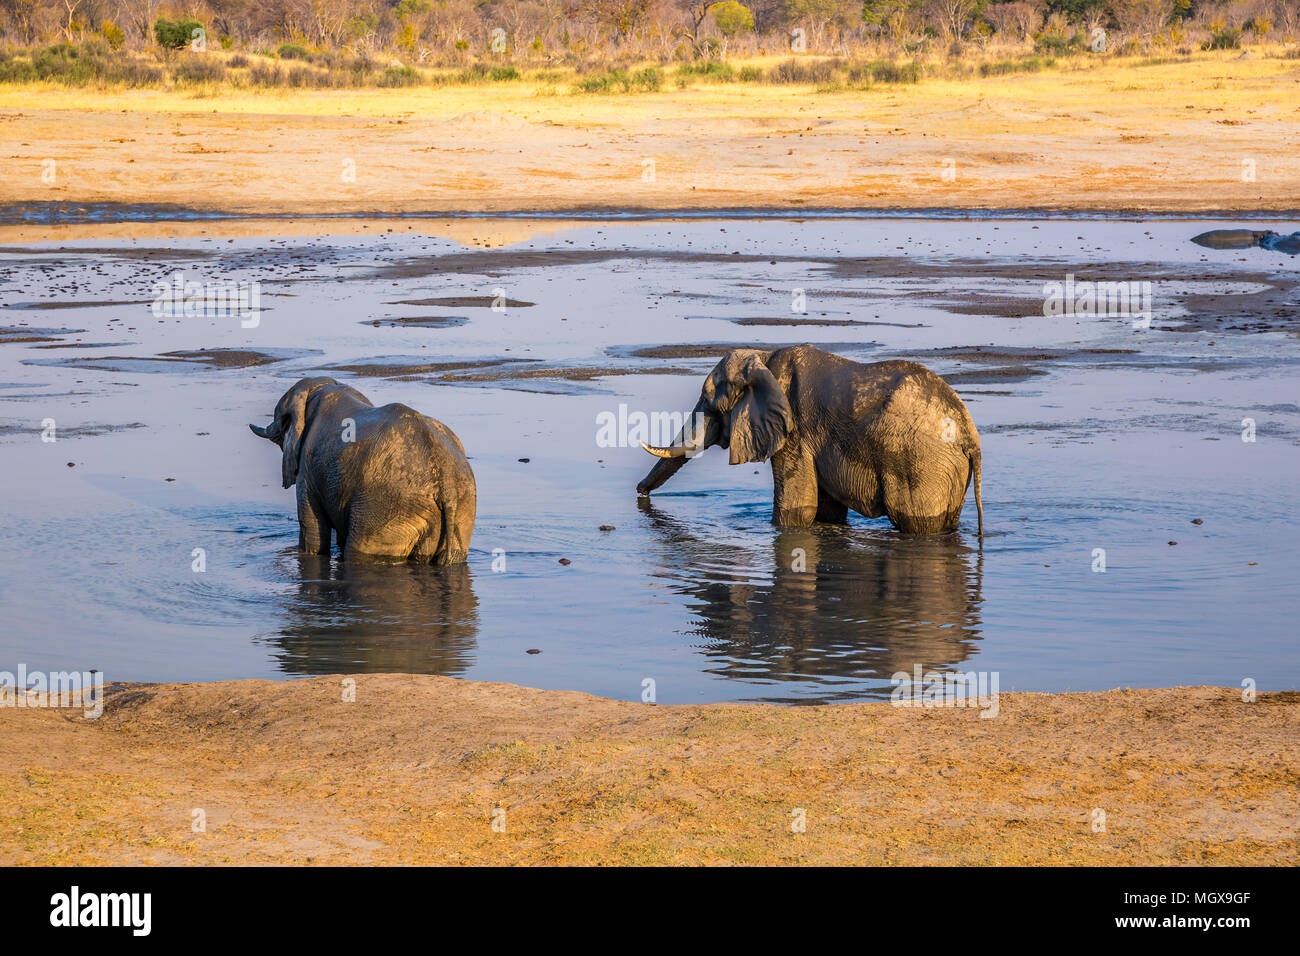 Les éléphants profitant de l'eau pendant une période de sécheresse dans le parc national de Hwange, Zimbabwe. Le 9 septembre 2016. Banque D'Images